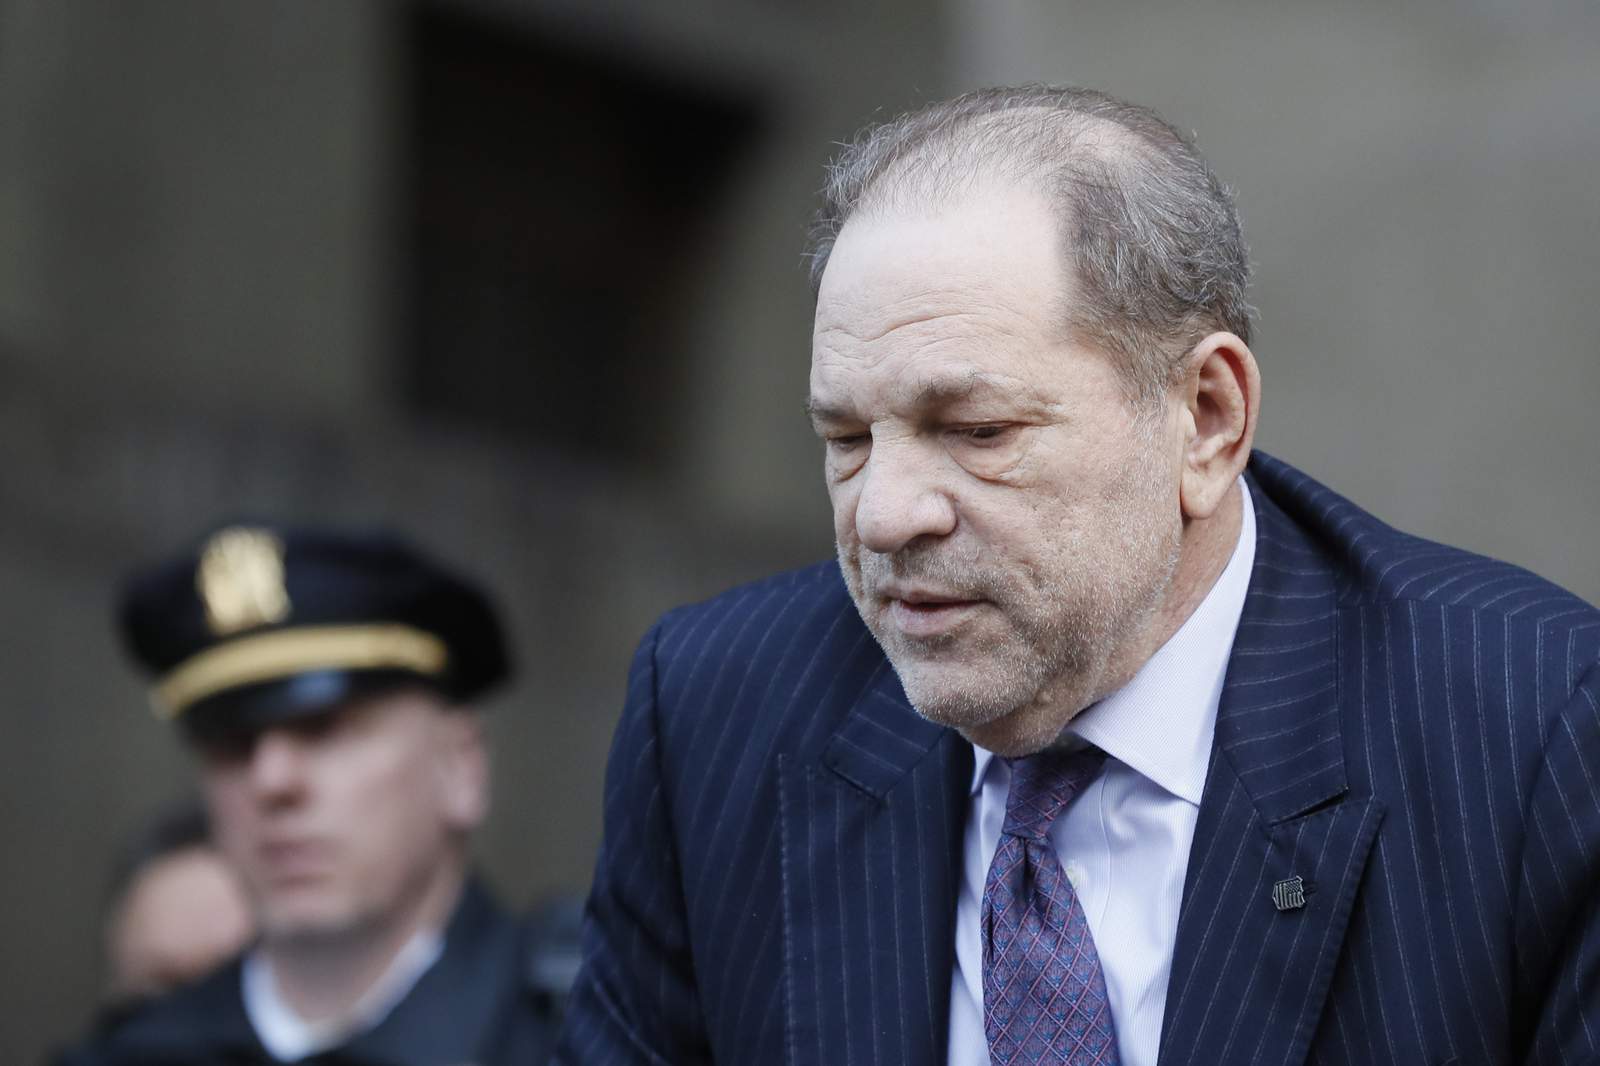 Harvey Weinstein found guilty in landmark #MeToo trial